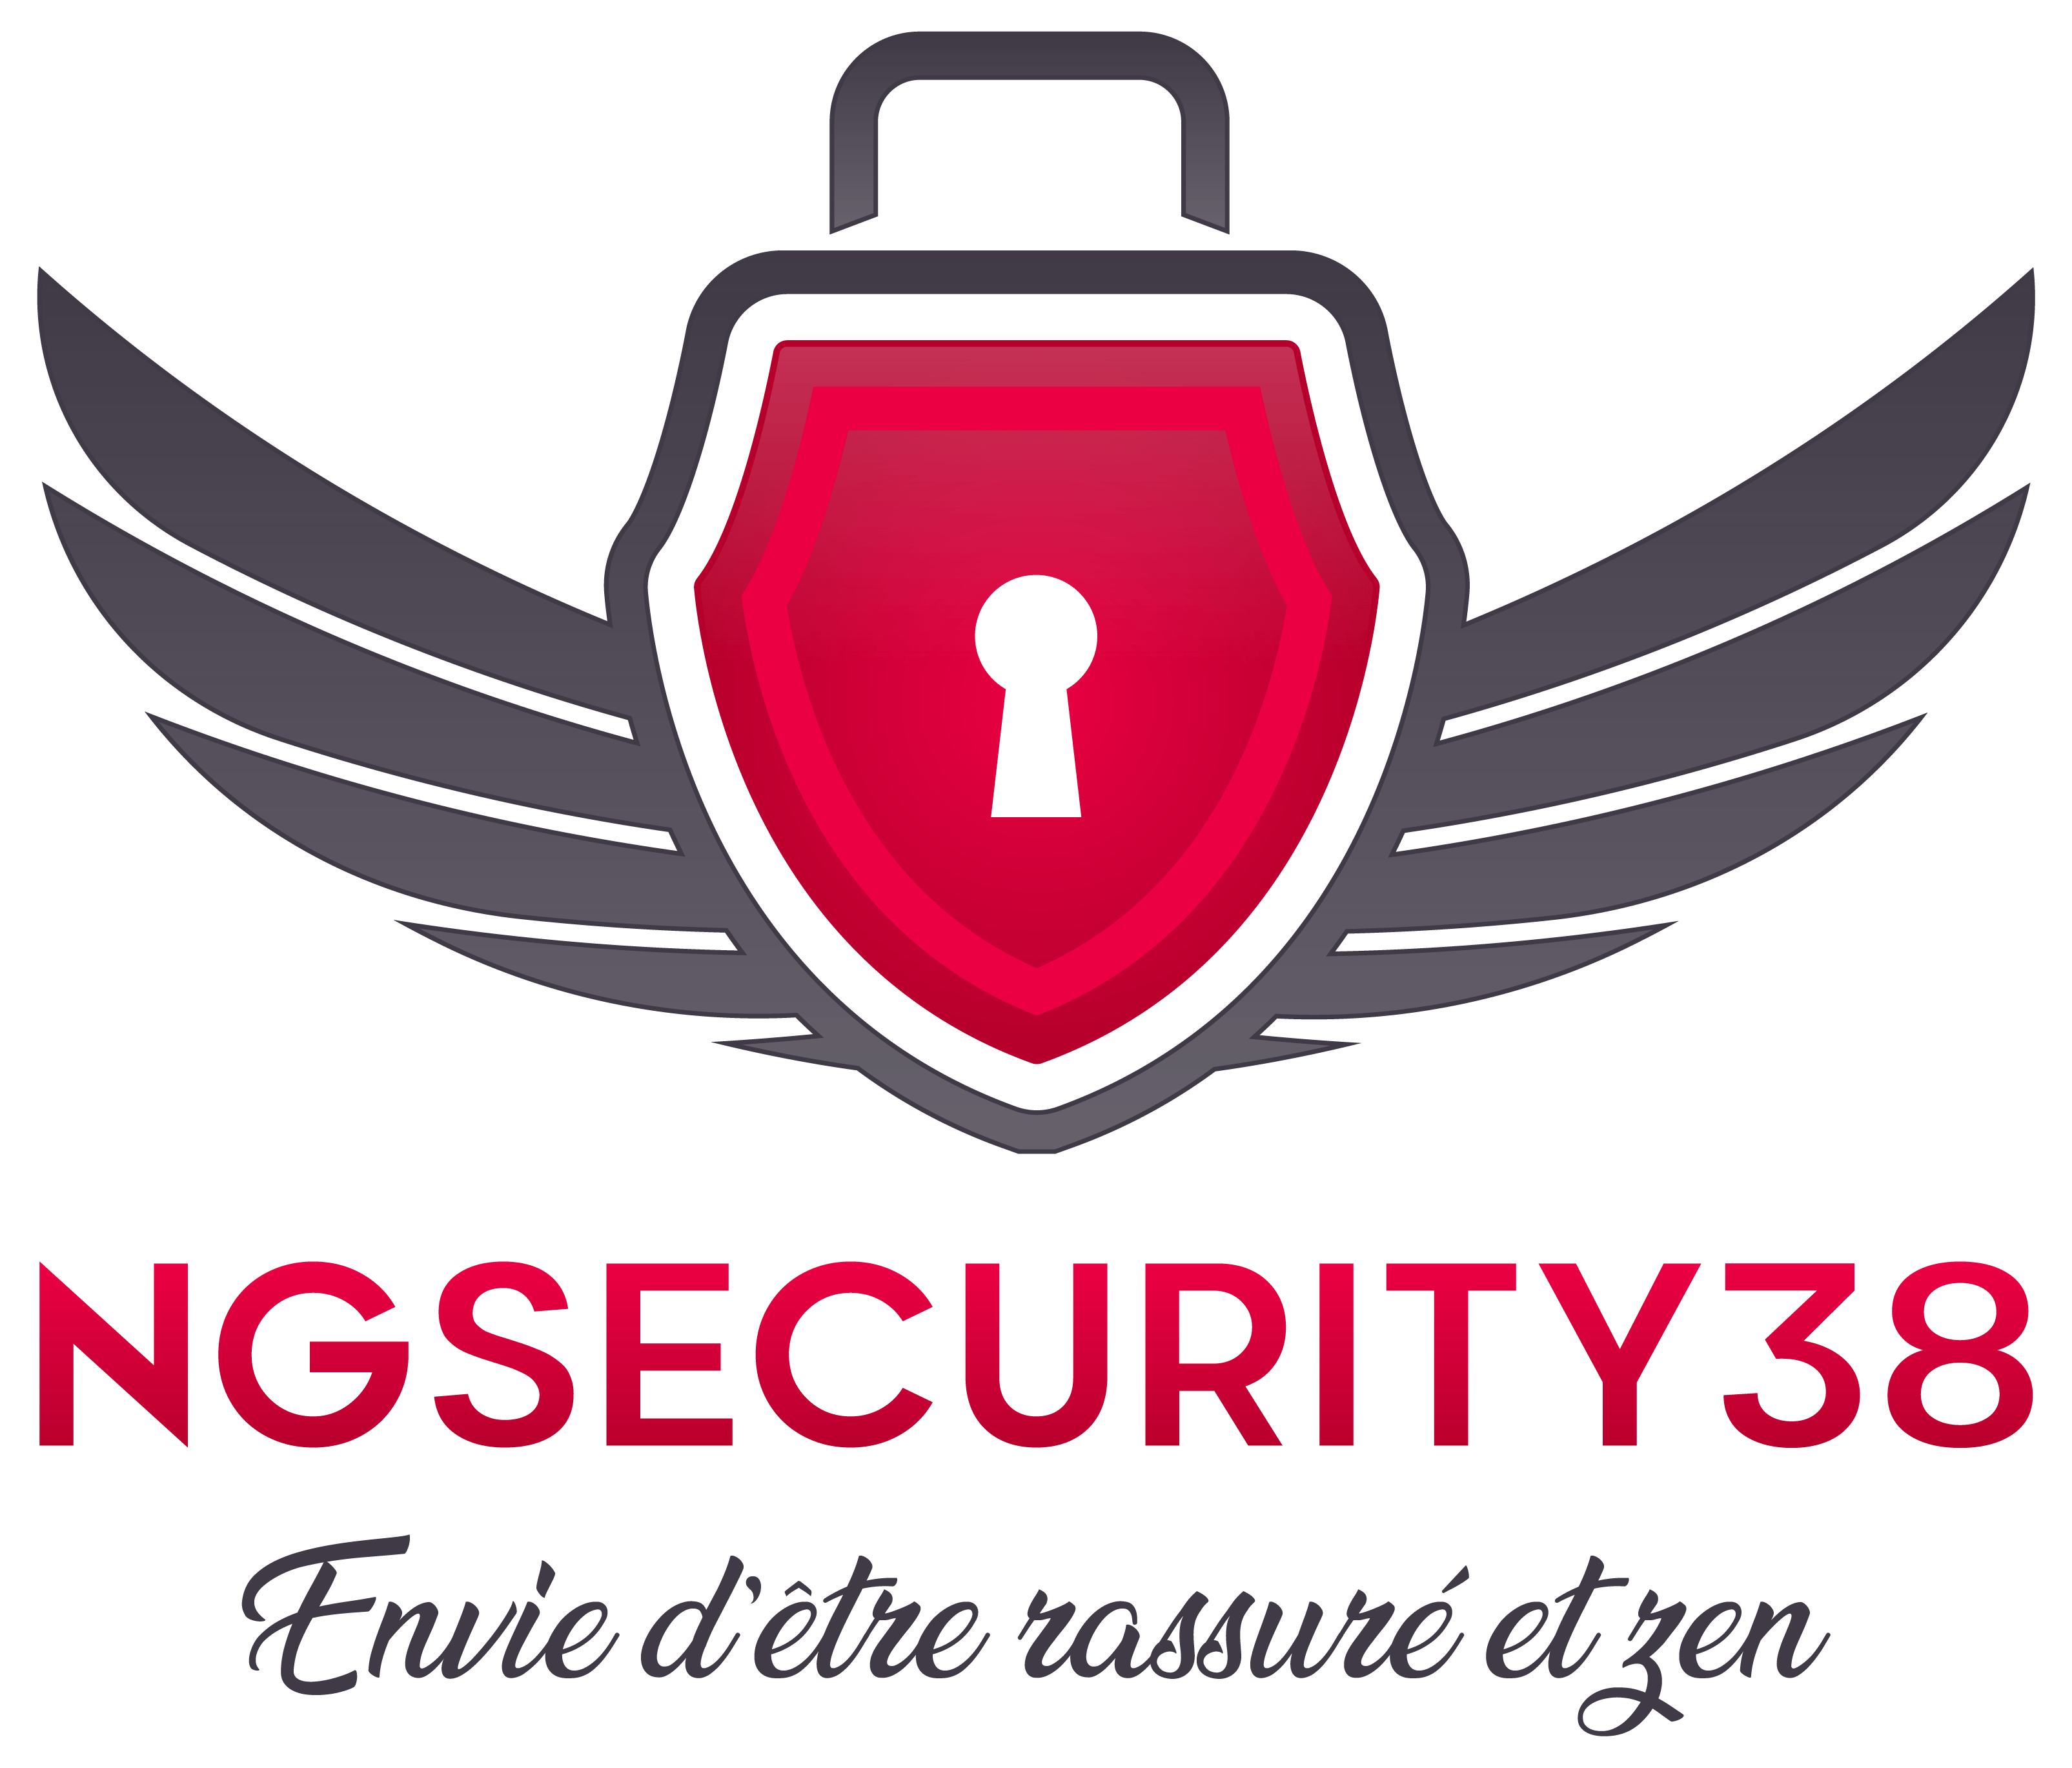 Ng Security 38 Envie D Etre Rassure Et Zen